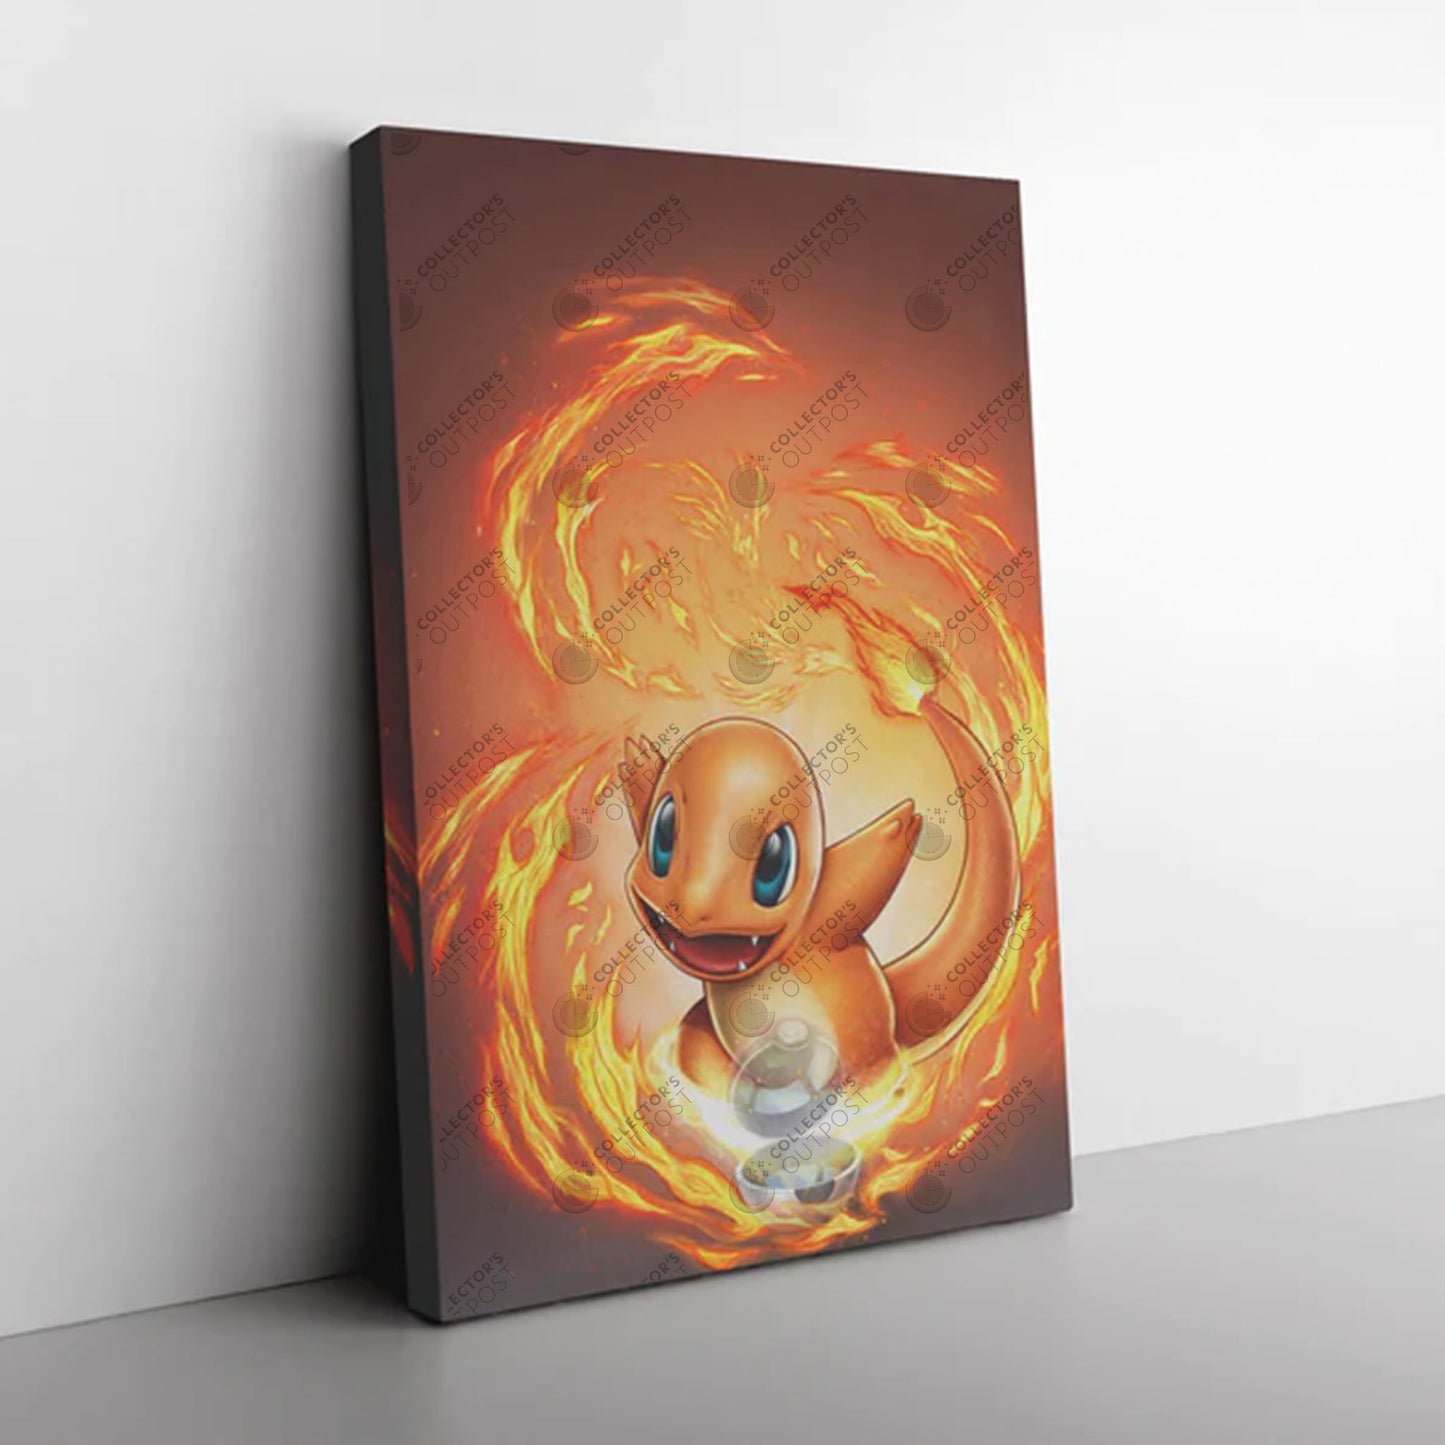 Charmander #004 (Pokemon) Premium Art Print